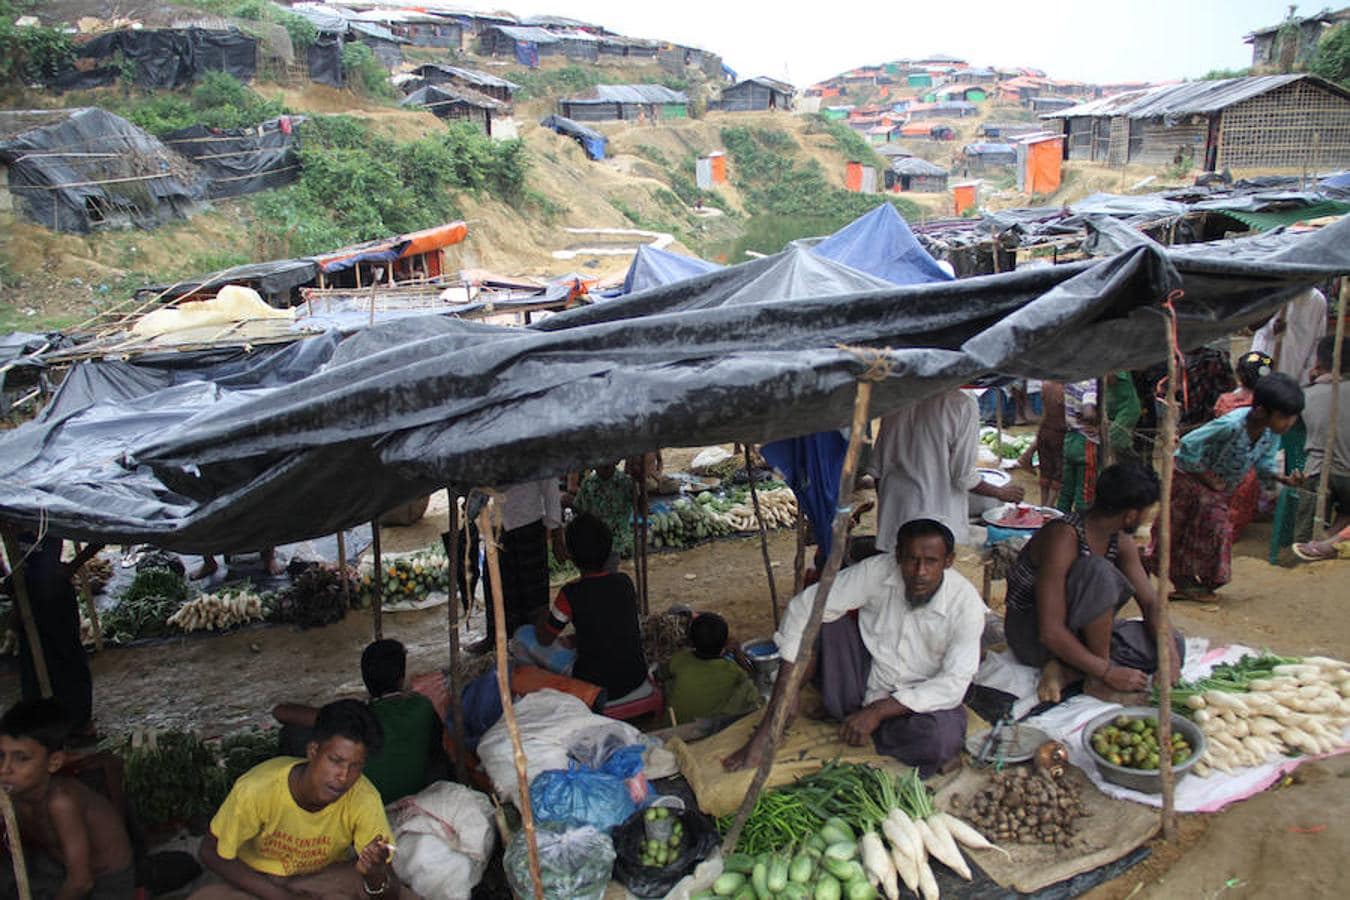 Albergando refugiados Rohingyas desde hace años, los campos de refugiados rohingyas, como este de Kutupalong, ya son auténticas ciudades de chozas de bambú con mercados. 